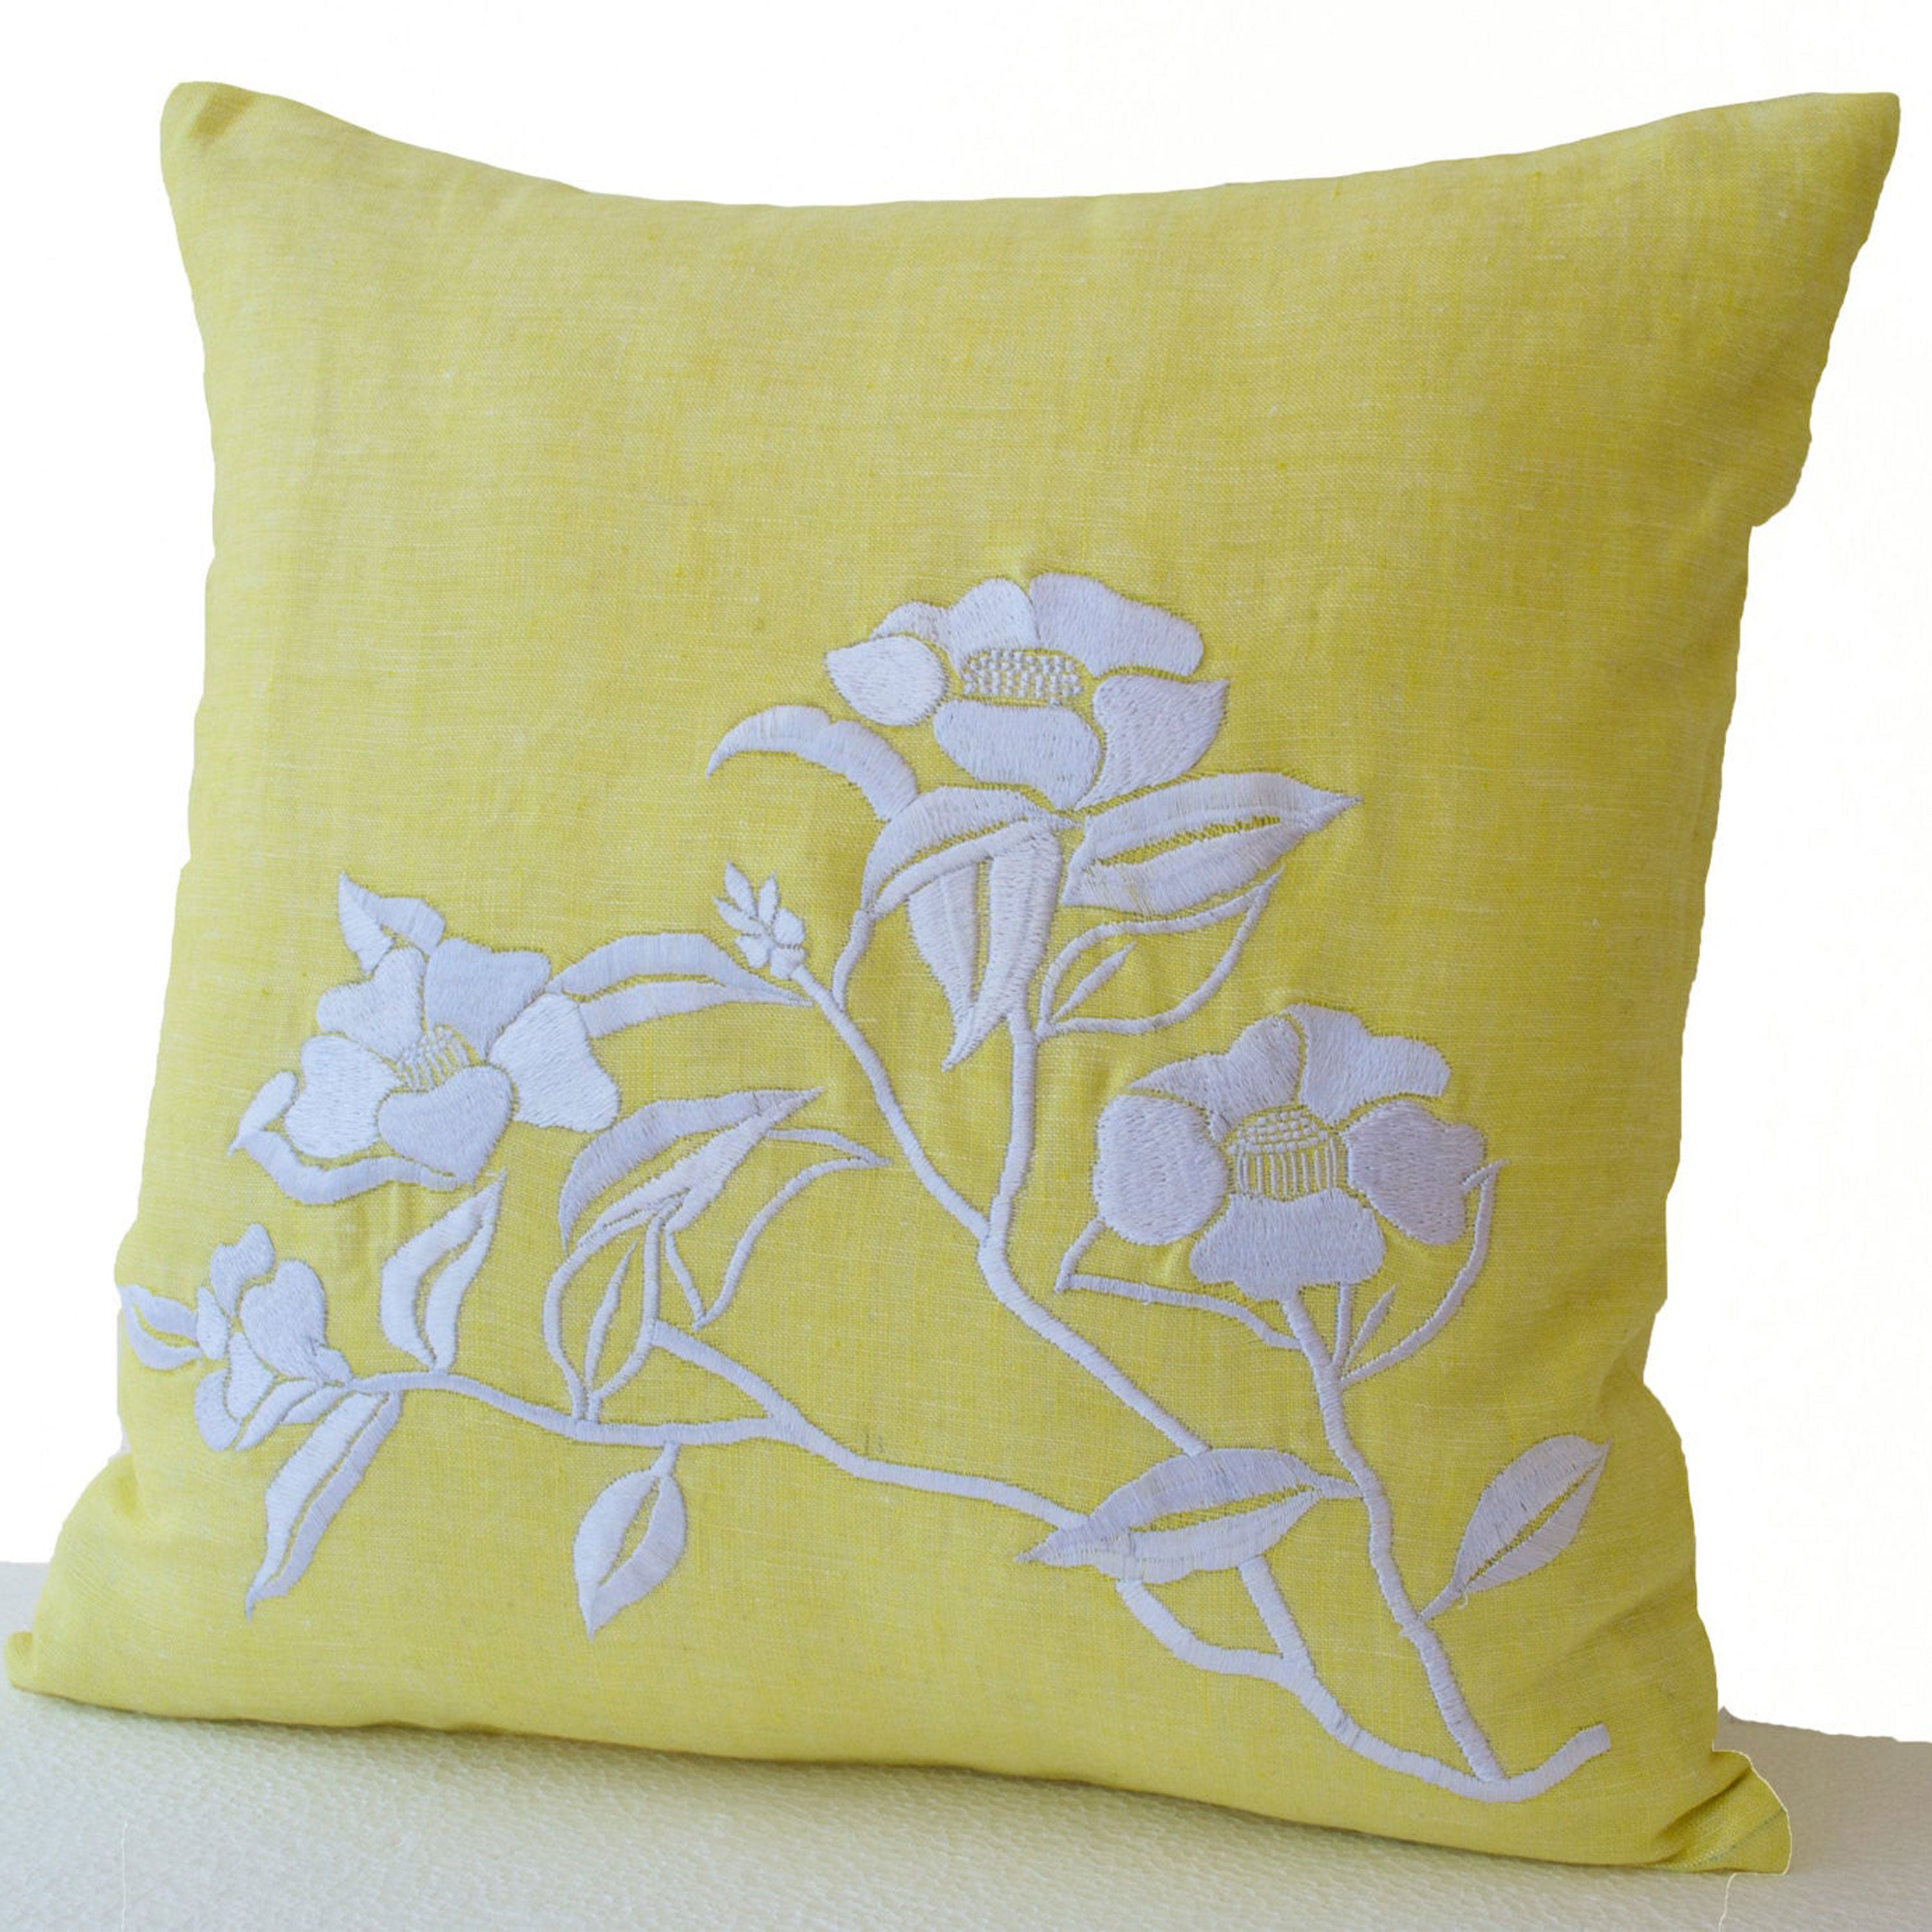 Flower Pillow- Yellow Pillow Cover -Iris Flowers Embroidered Pillow- Linen Pillow Covers- Modern Throw pillows- 16x16- Yellow White Pillows